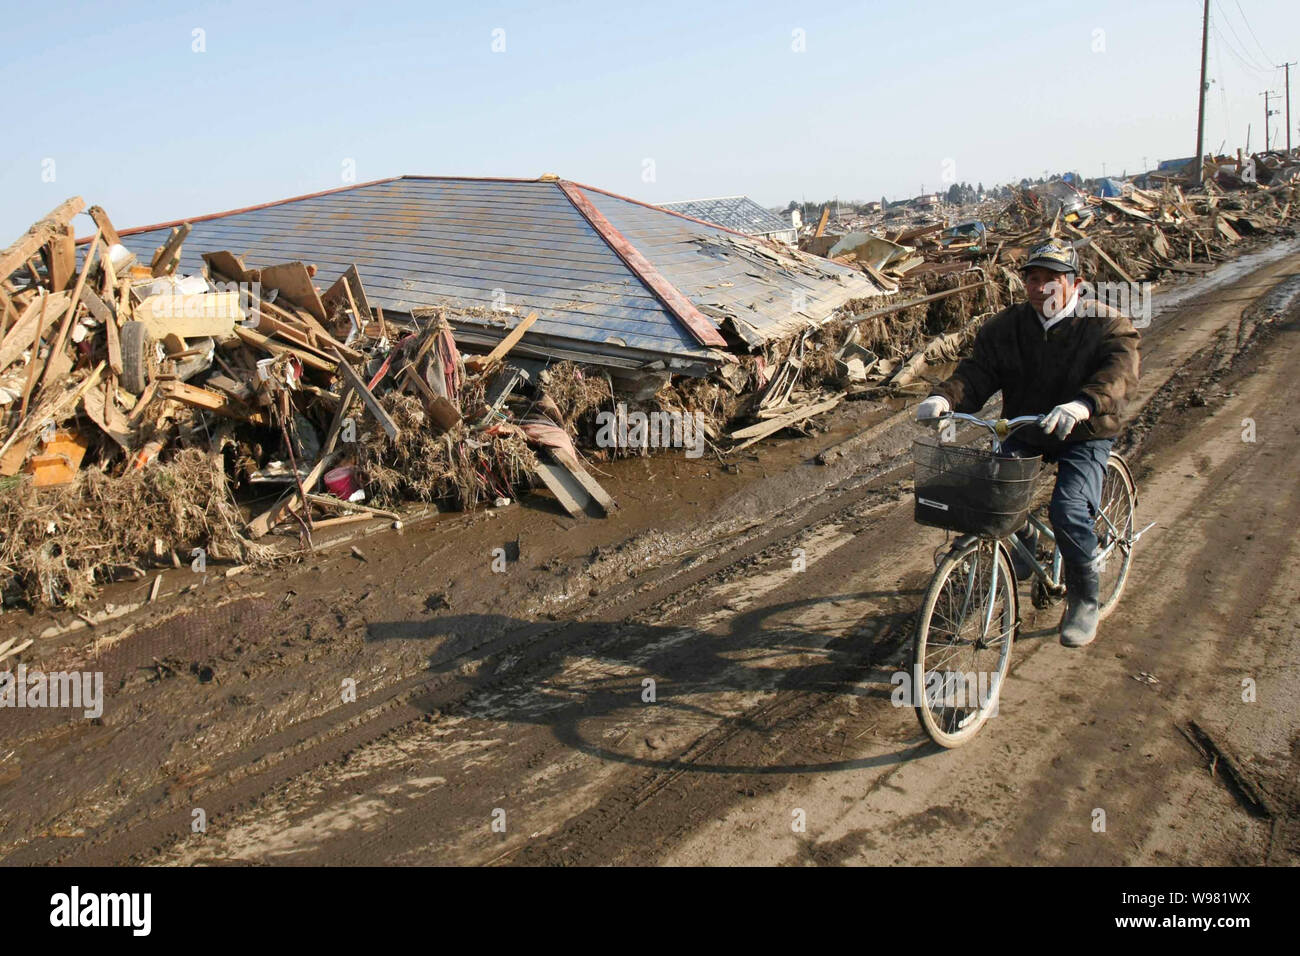 Un uomo giapponese cavalca la sua bicicletta passato i detriti dello tsunami la devastazione causata dal 9,0-terremoto di magnitudine di Sendai, Giappone, 13 marzo 2011. Foto Stock